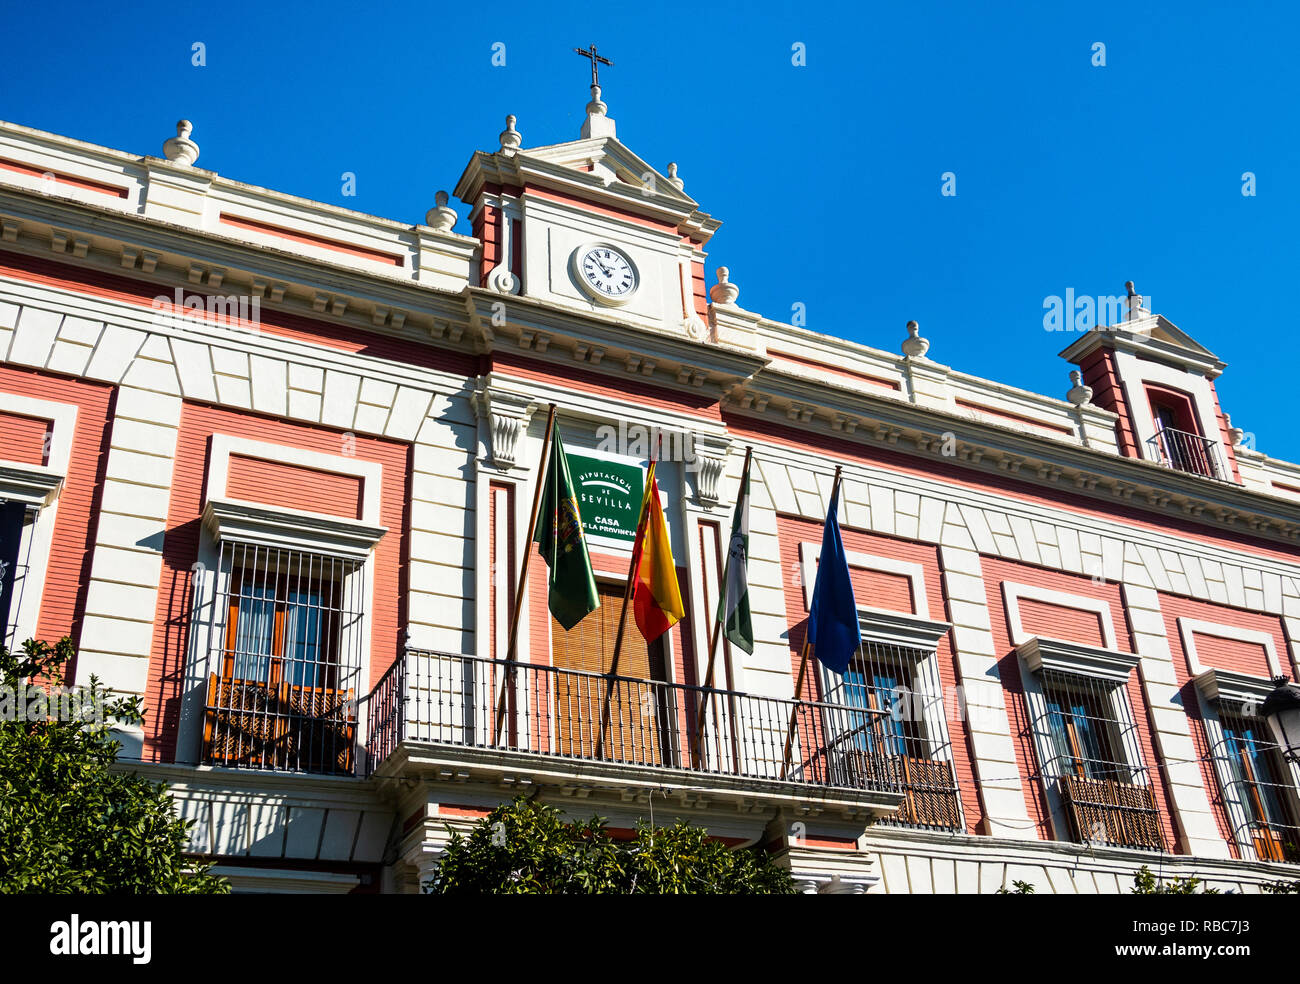 The entrance to the Casa de La Provincia in Seville, Spain Stock Photo